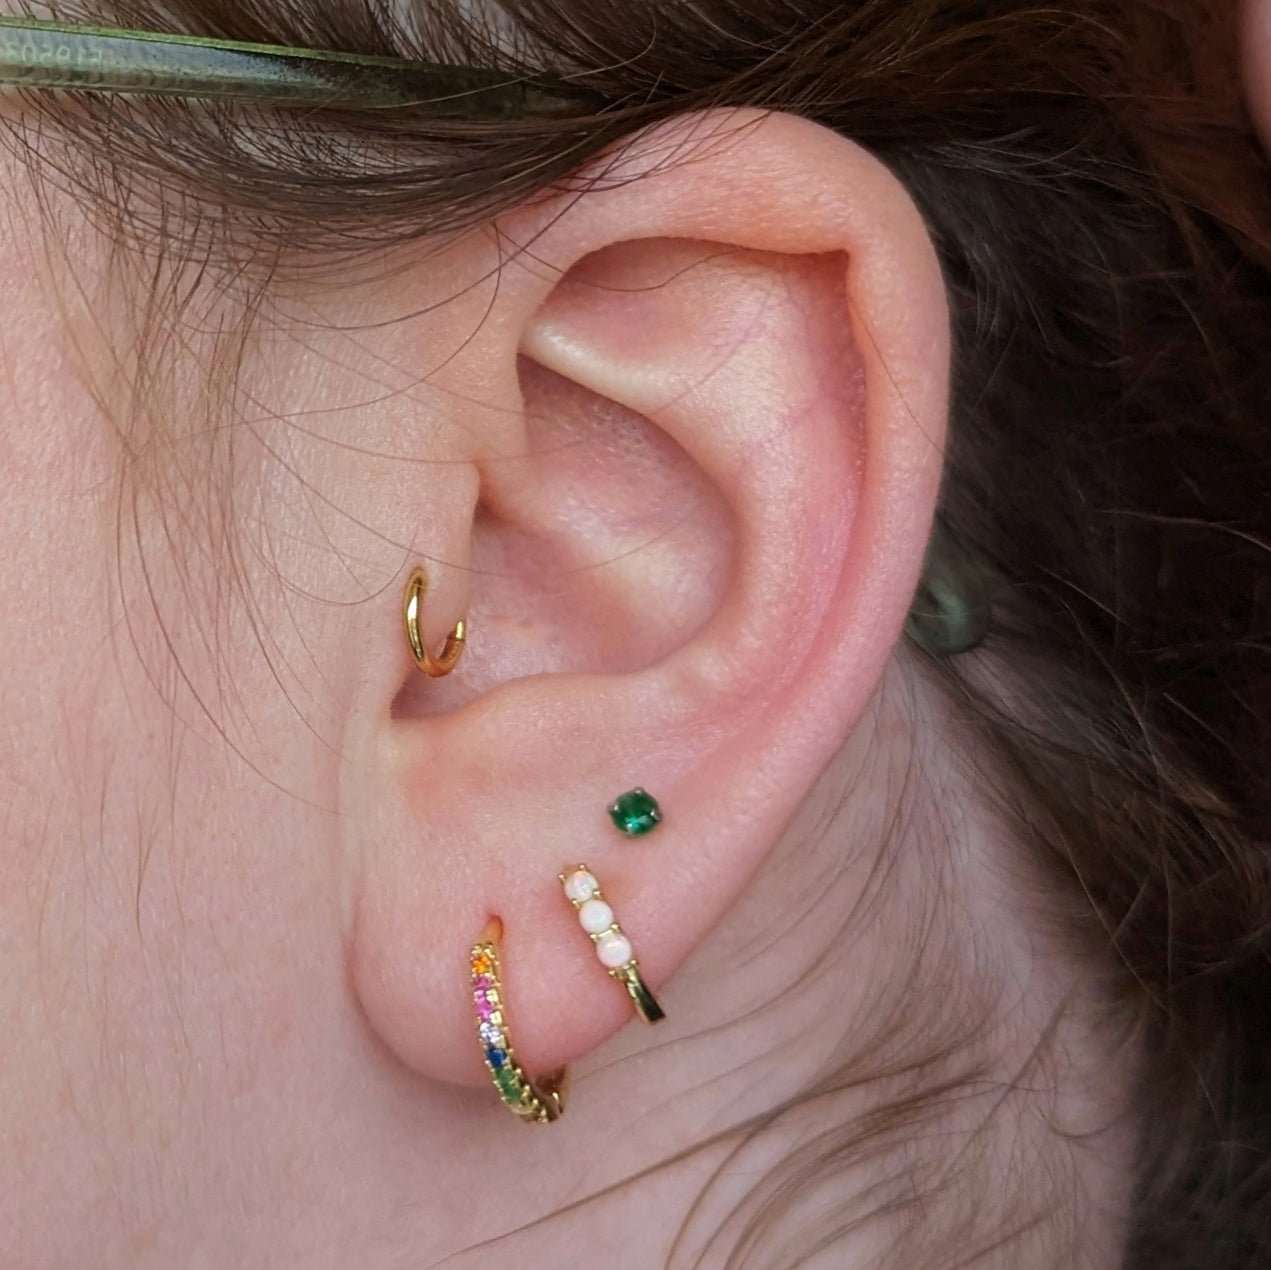 Gold vermeil rainbow huggie hoop earrings - M. Elizabeth